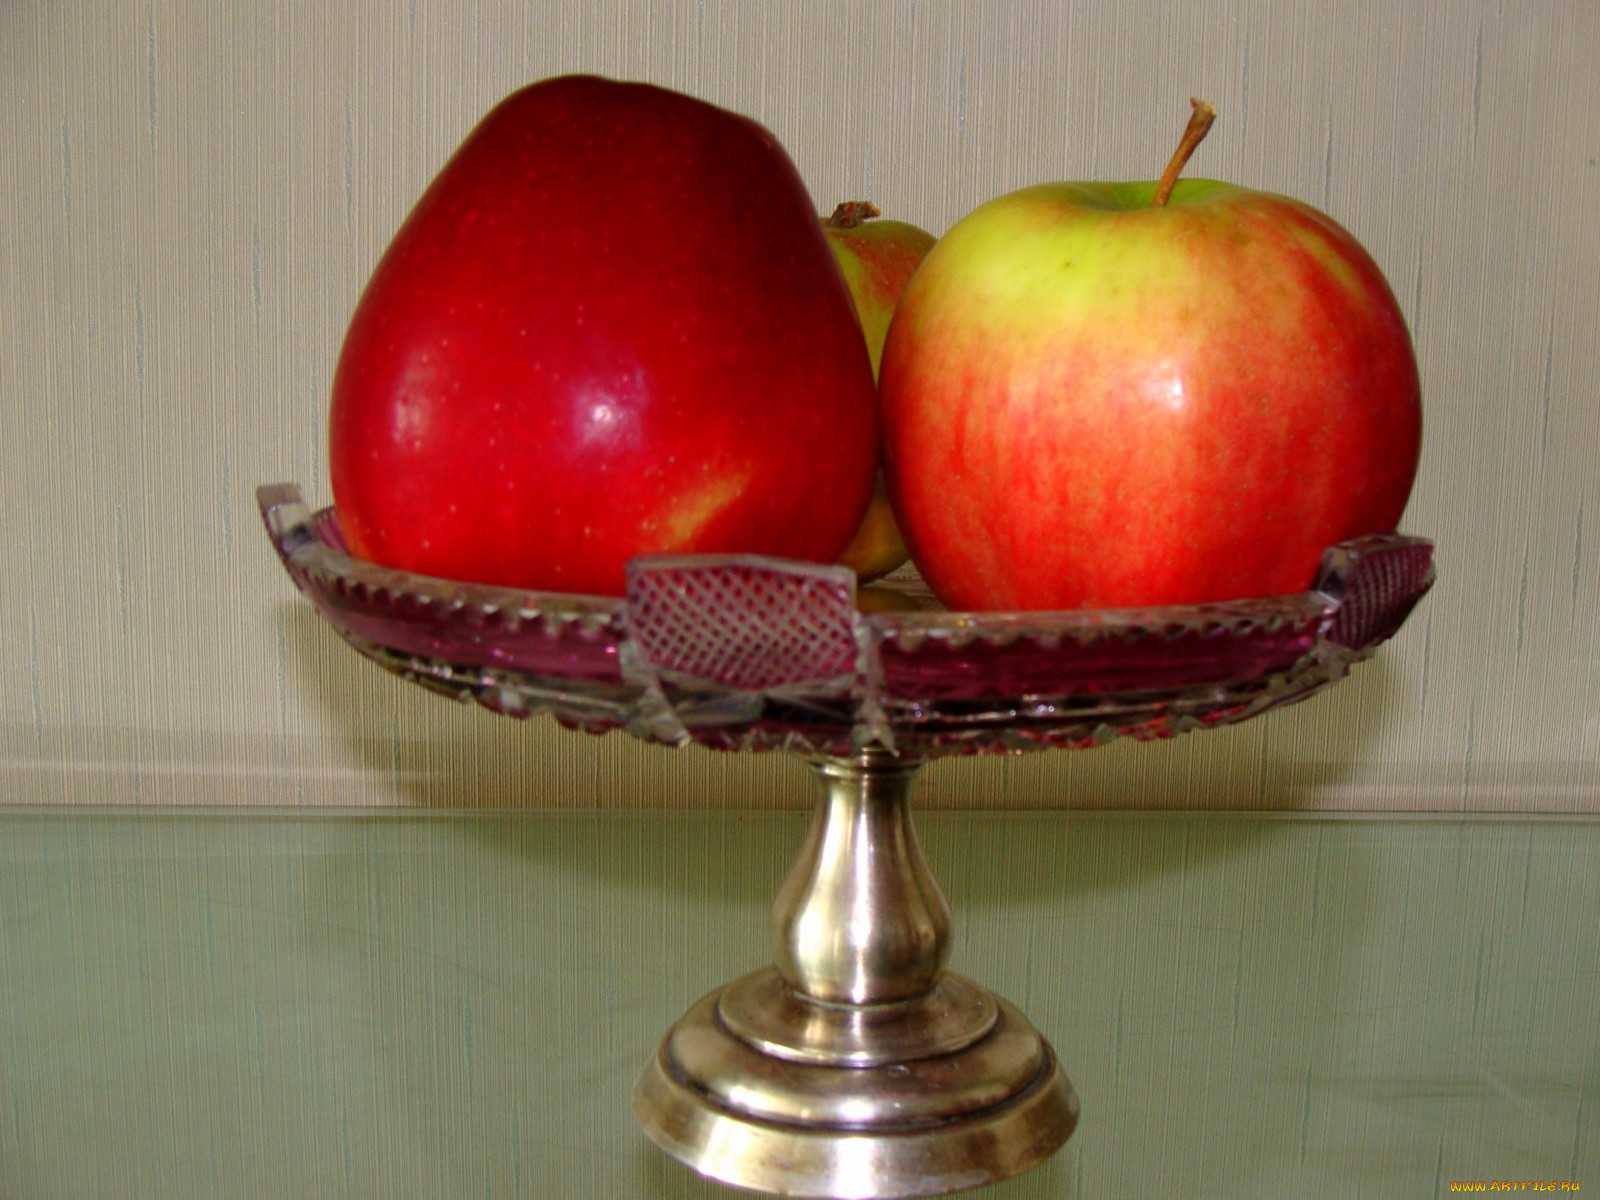 на столе лежало 5 яблок